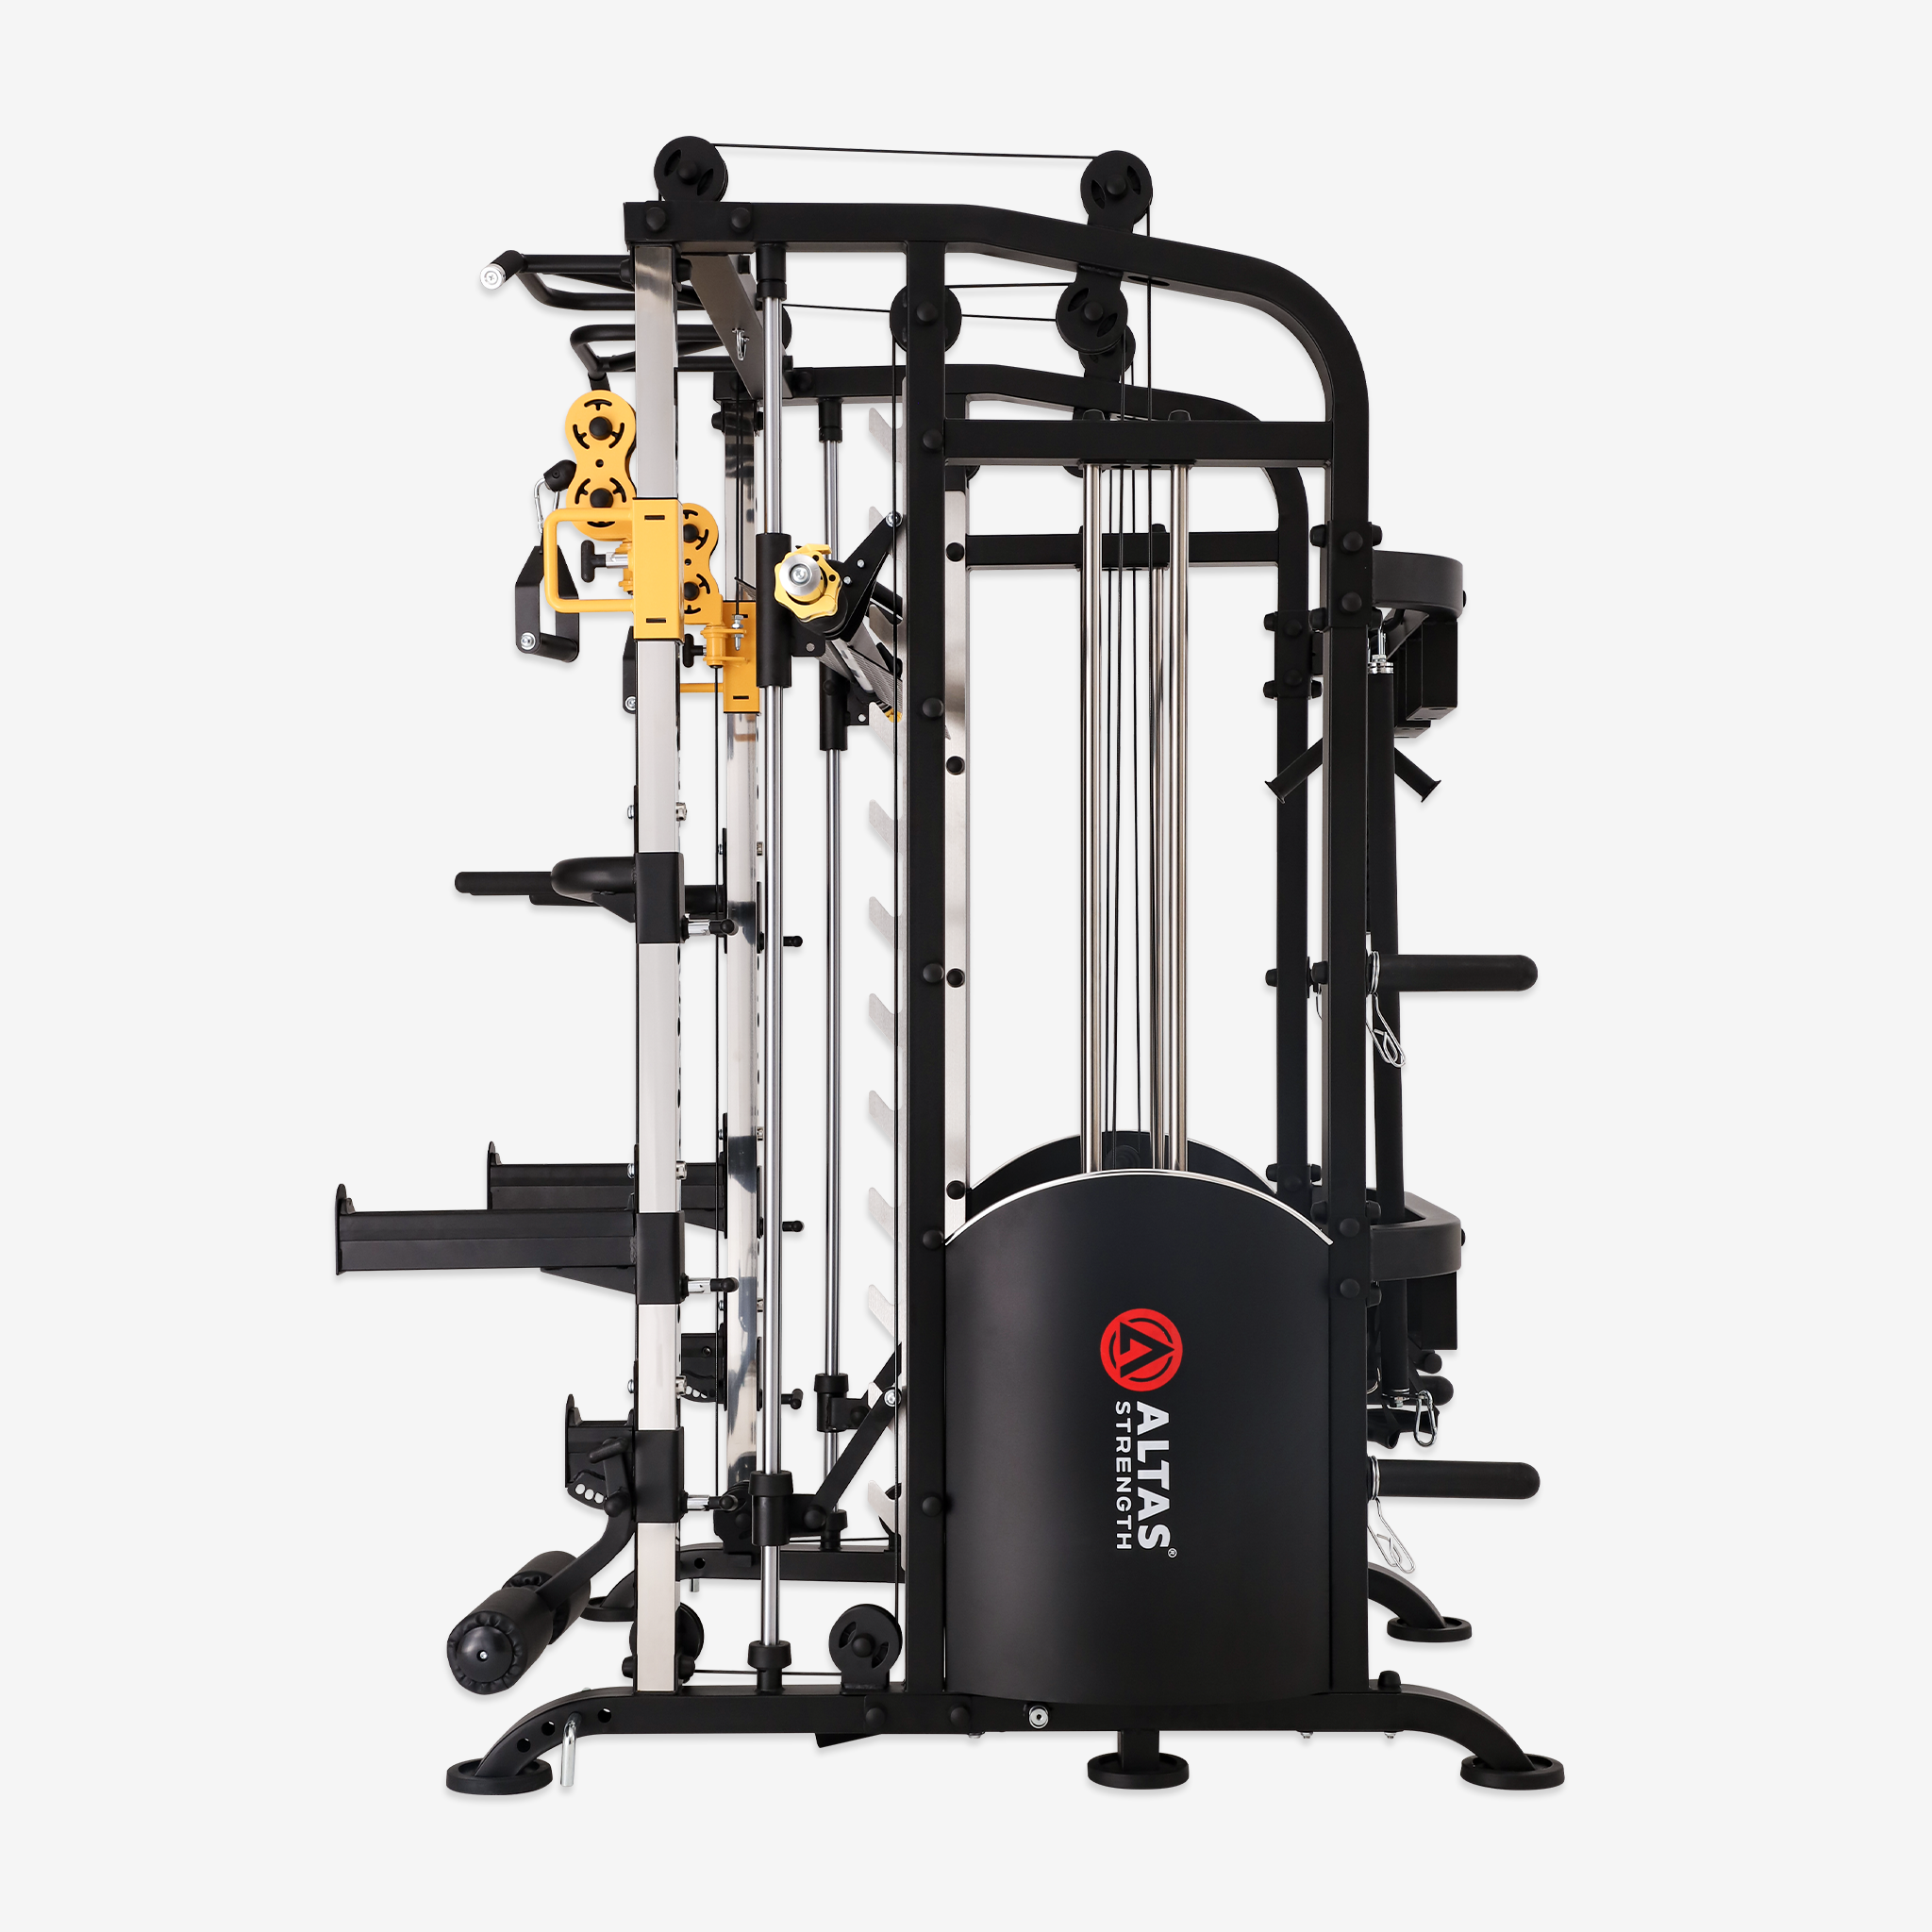 Altas Strength Home Gym Equipment Smith Machine AL-M810